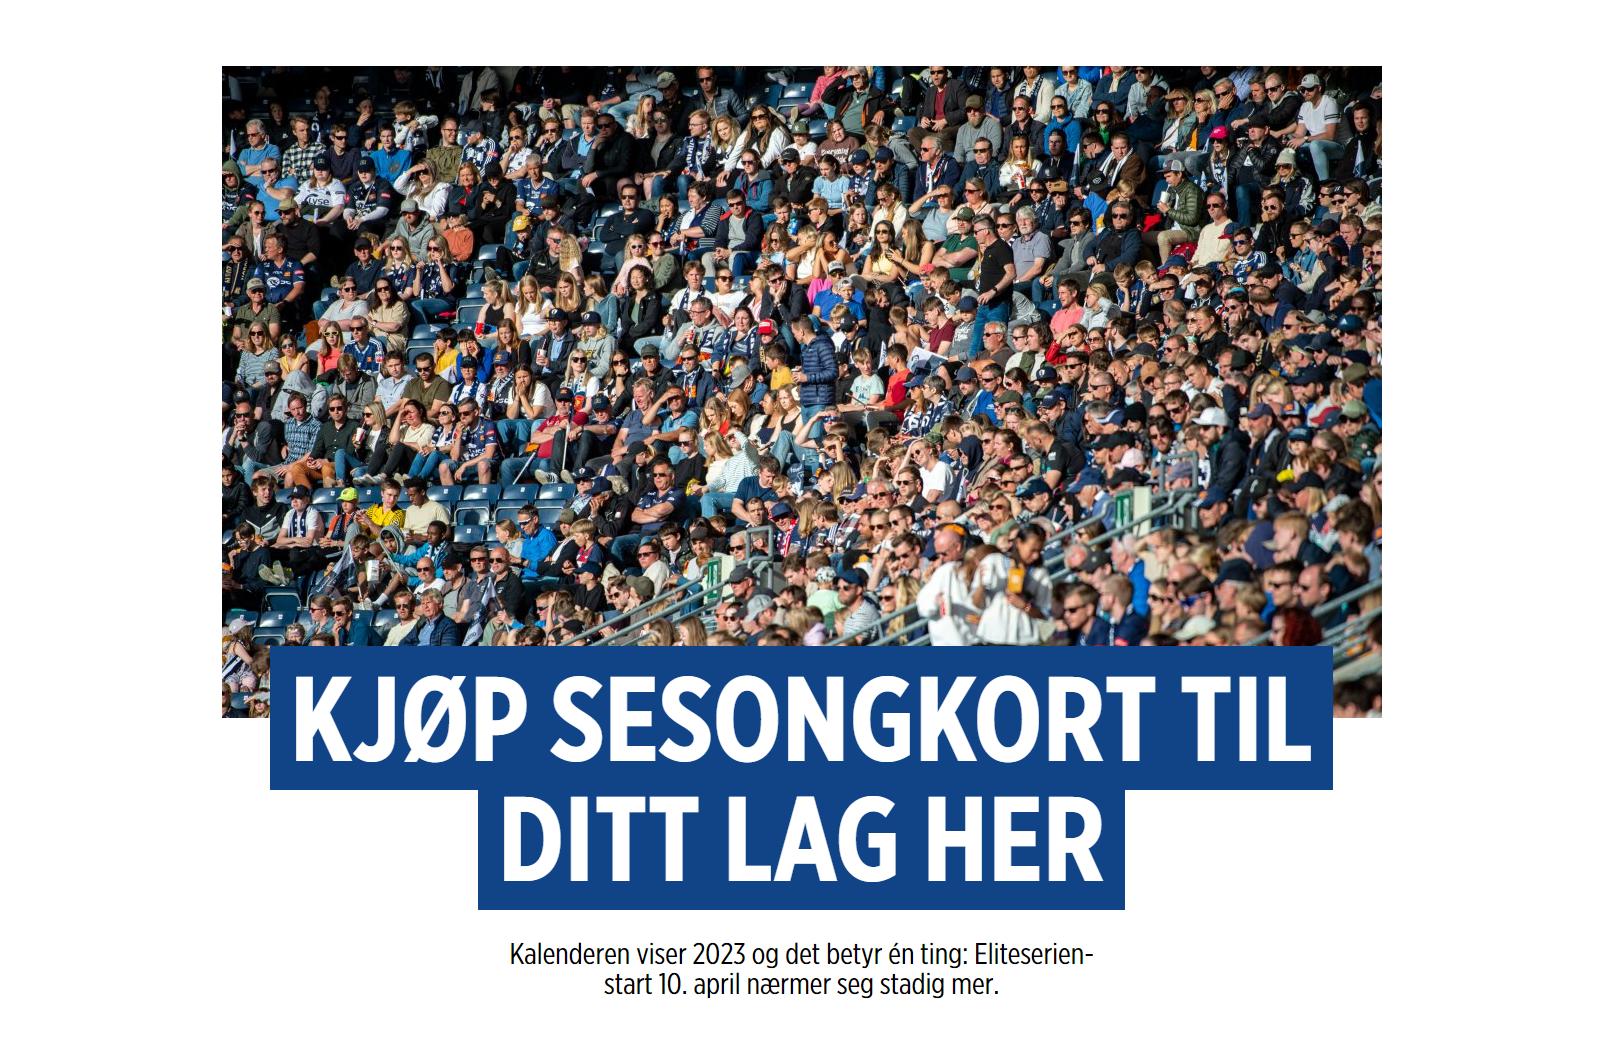 扫盲贴——关于挪威足球超级联赛赛制、晋级和特点